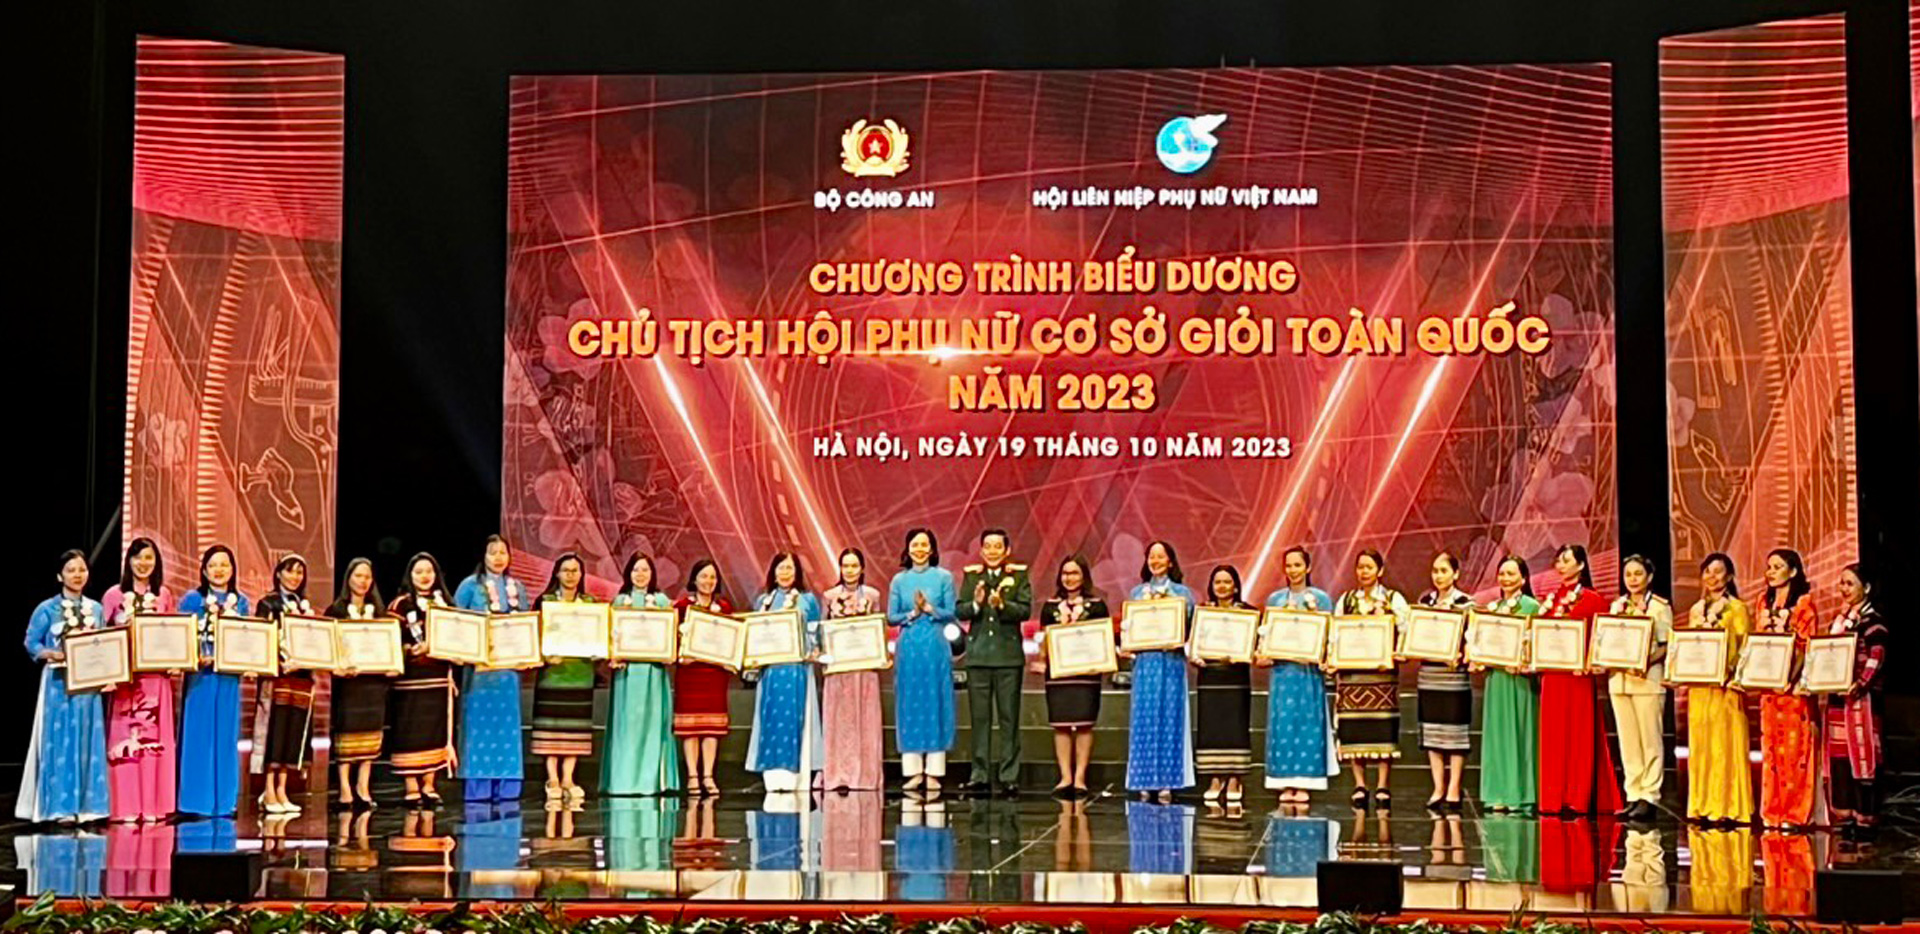 Hội LHPN Lâm Đồng có 4 chị được biểu dương Chủ tịch Hội Phụ nữ cơ sở giỏi toàn quốc năm 2023